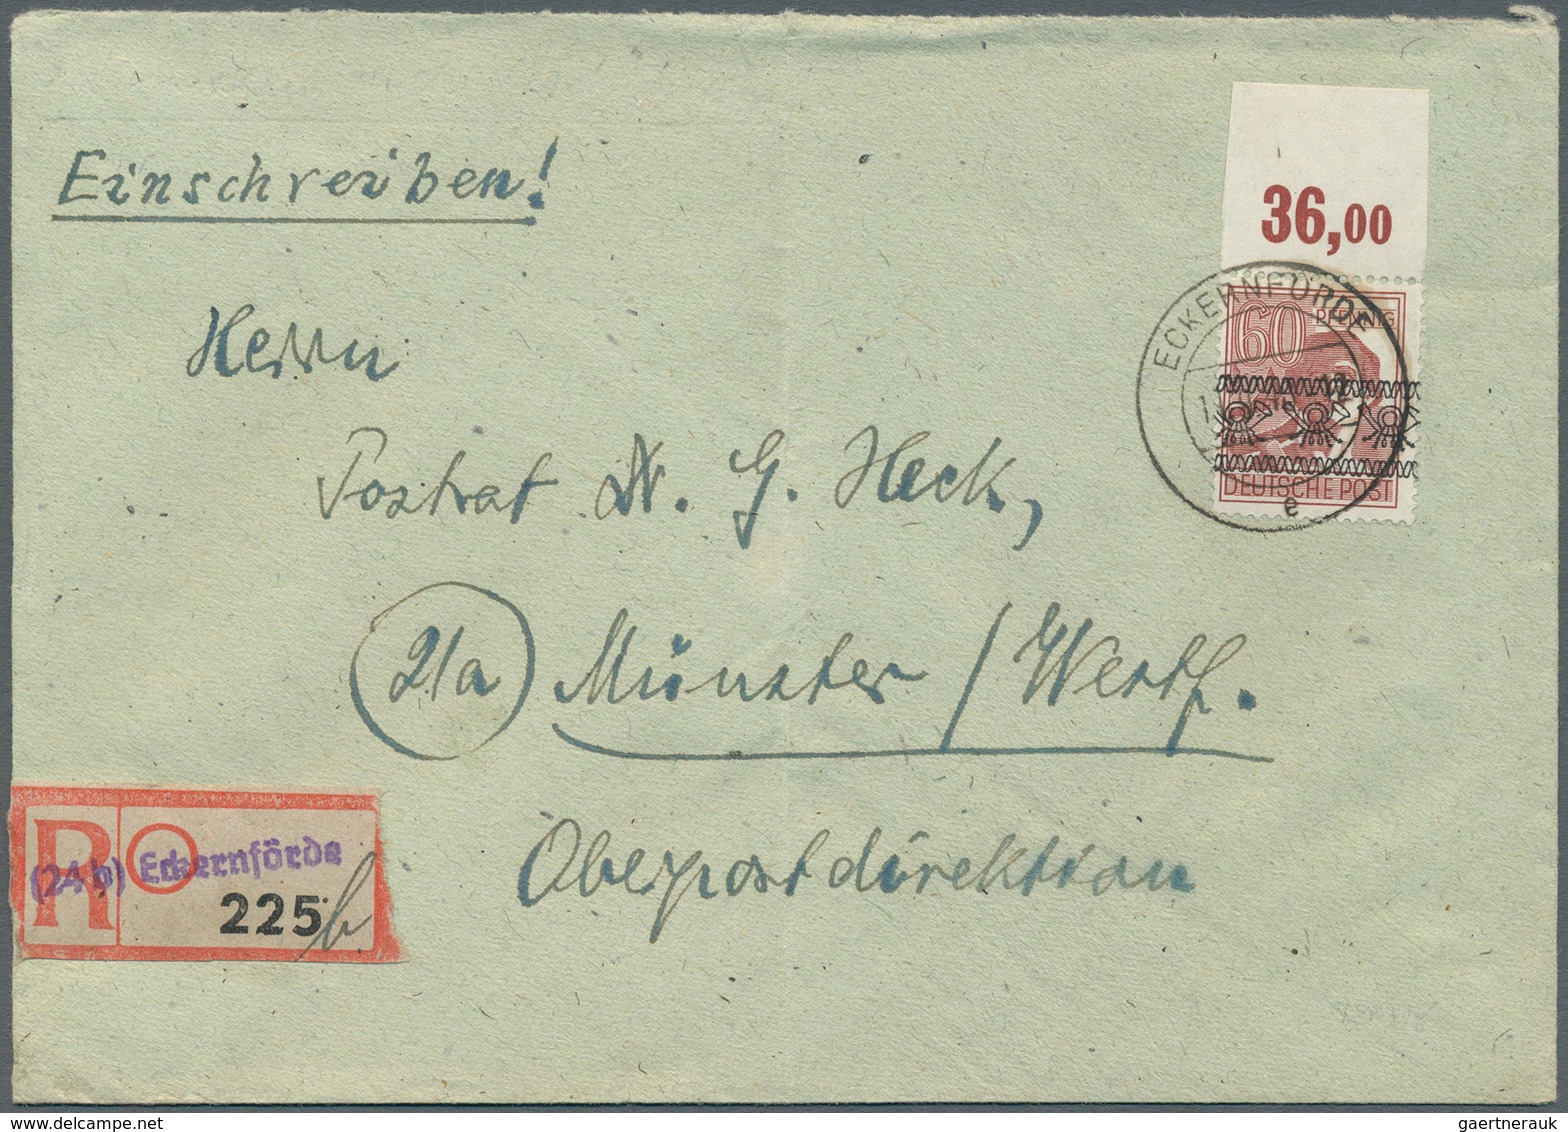 32609 Bizone: 1945/1949, Bizone und etwas Alliierte Besetzung, nette Partie von fast 90 dekorativen Briefe